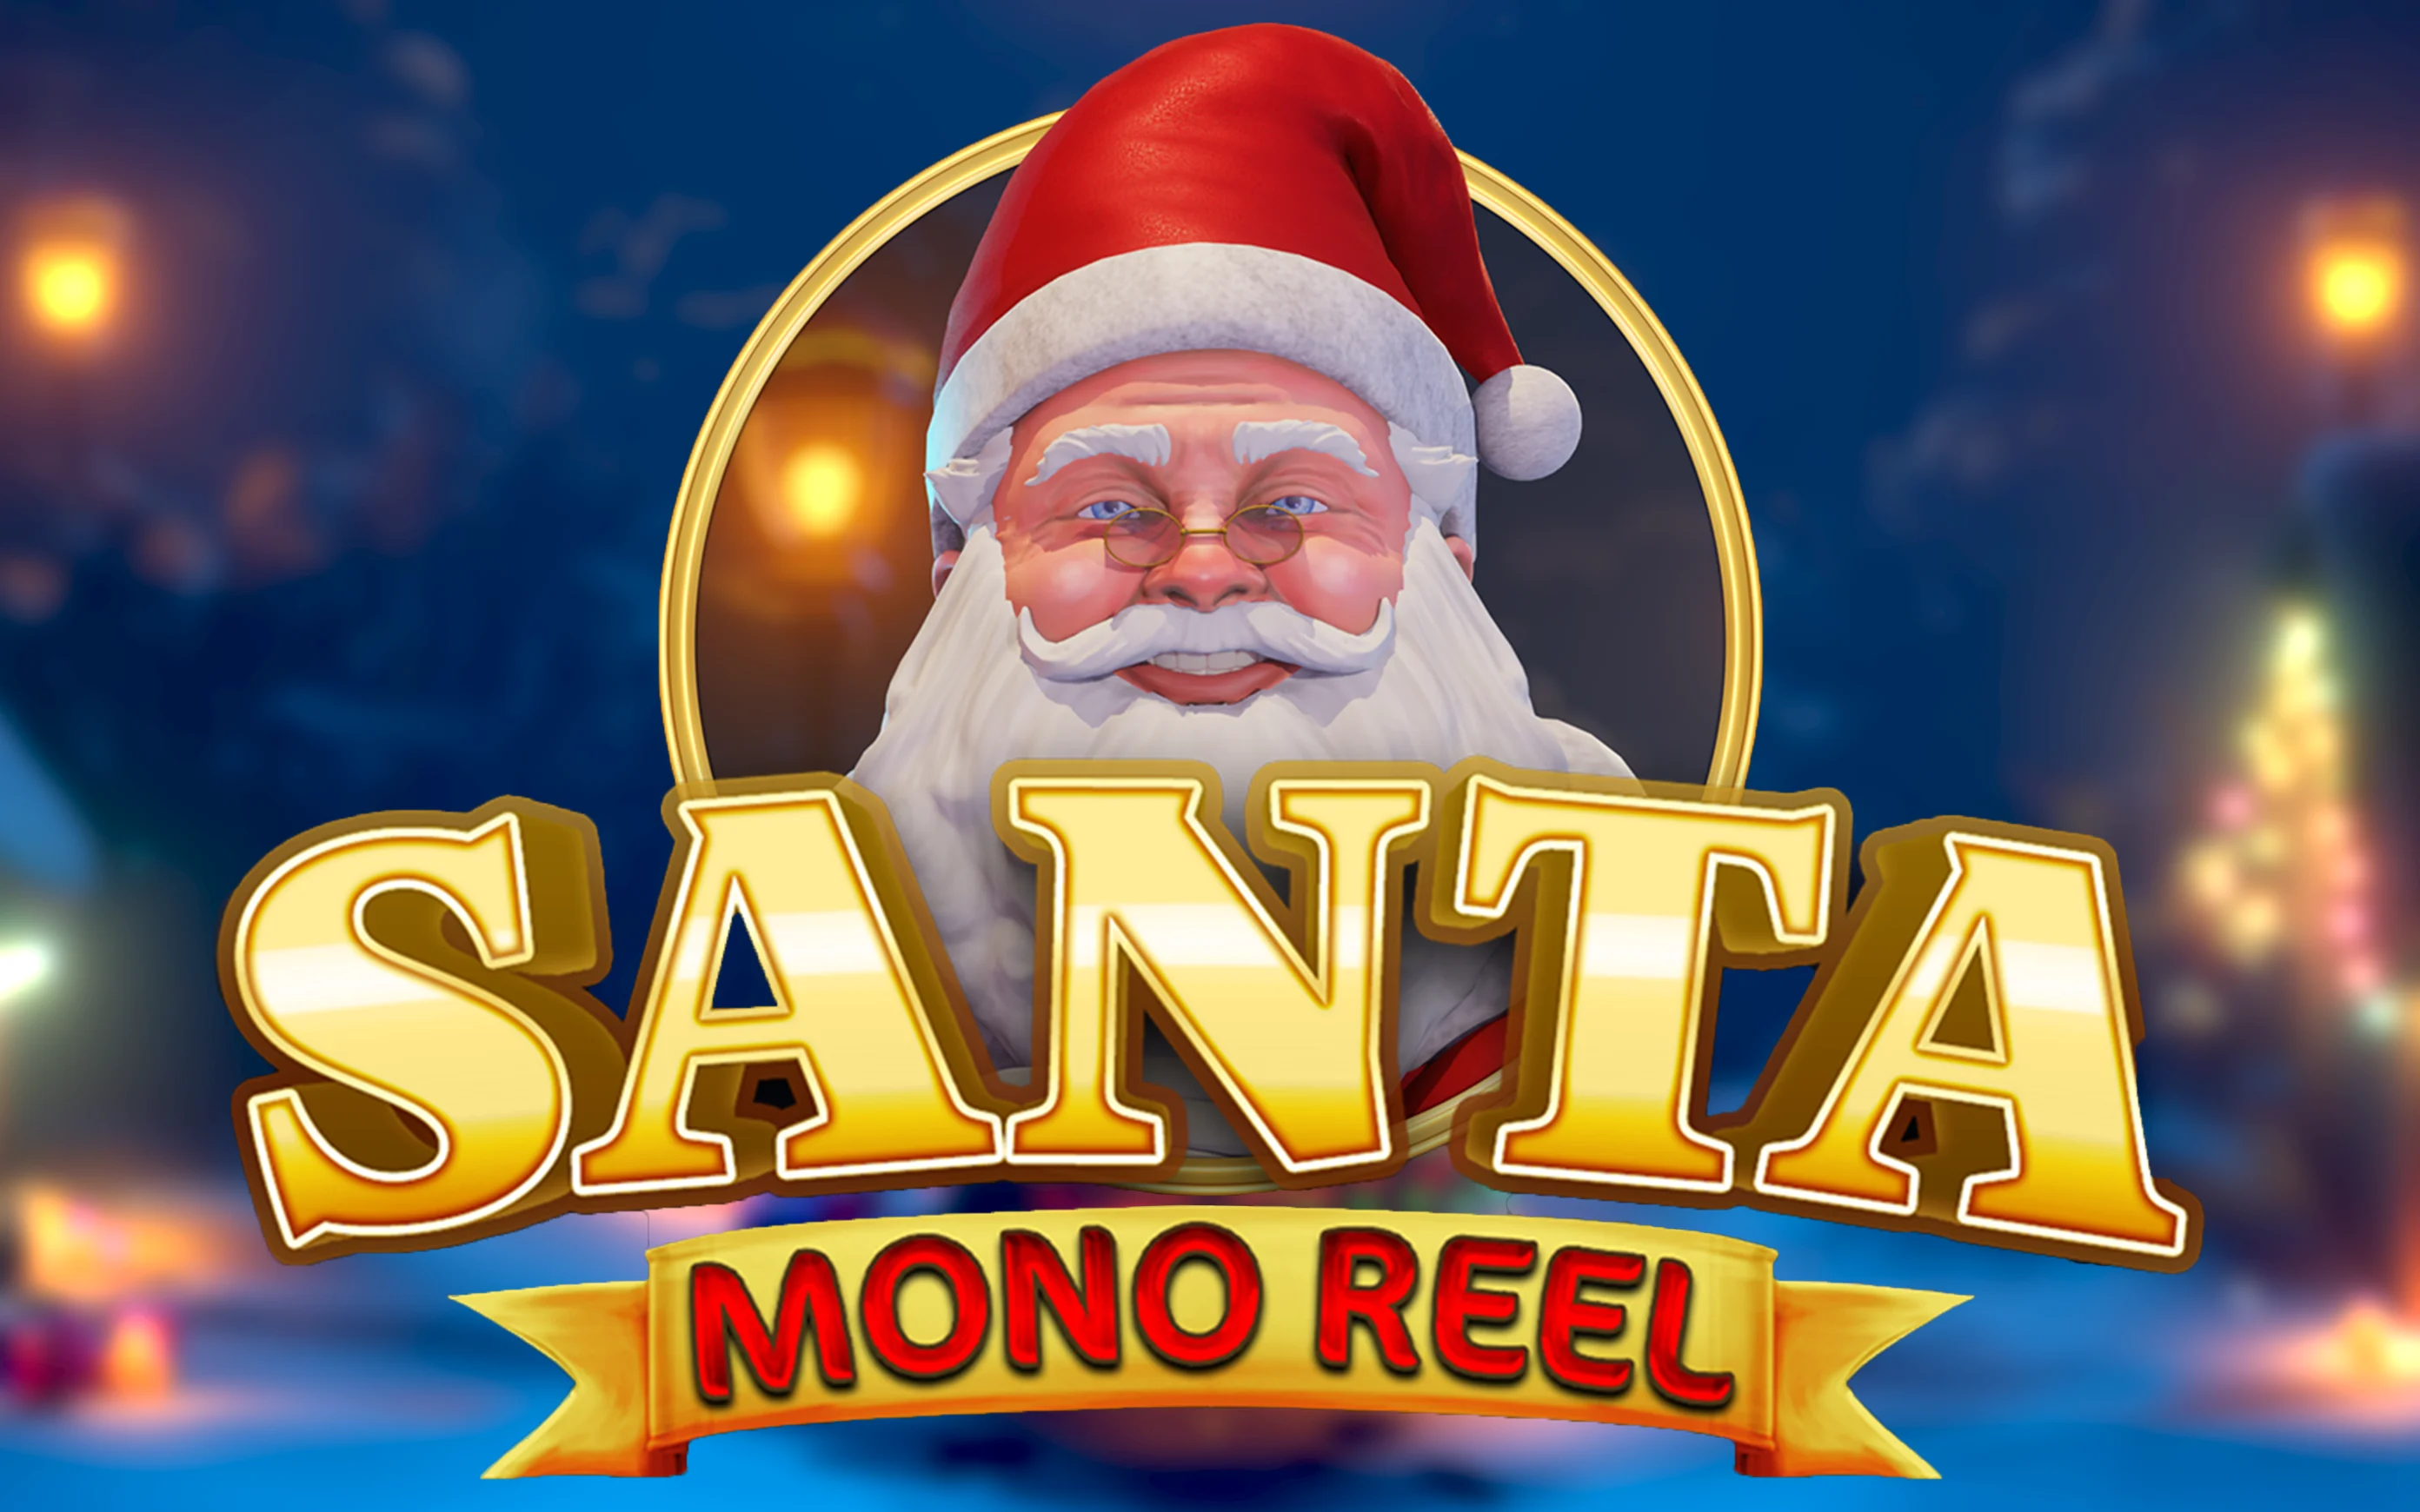 เล่น Mono Reel Santa บนคาสิโนออนไลน์ Starcasino.be